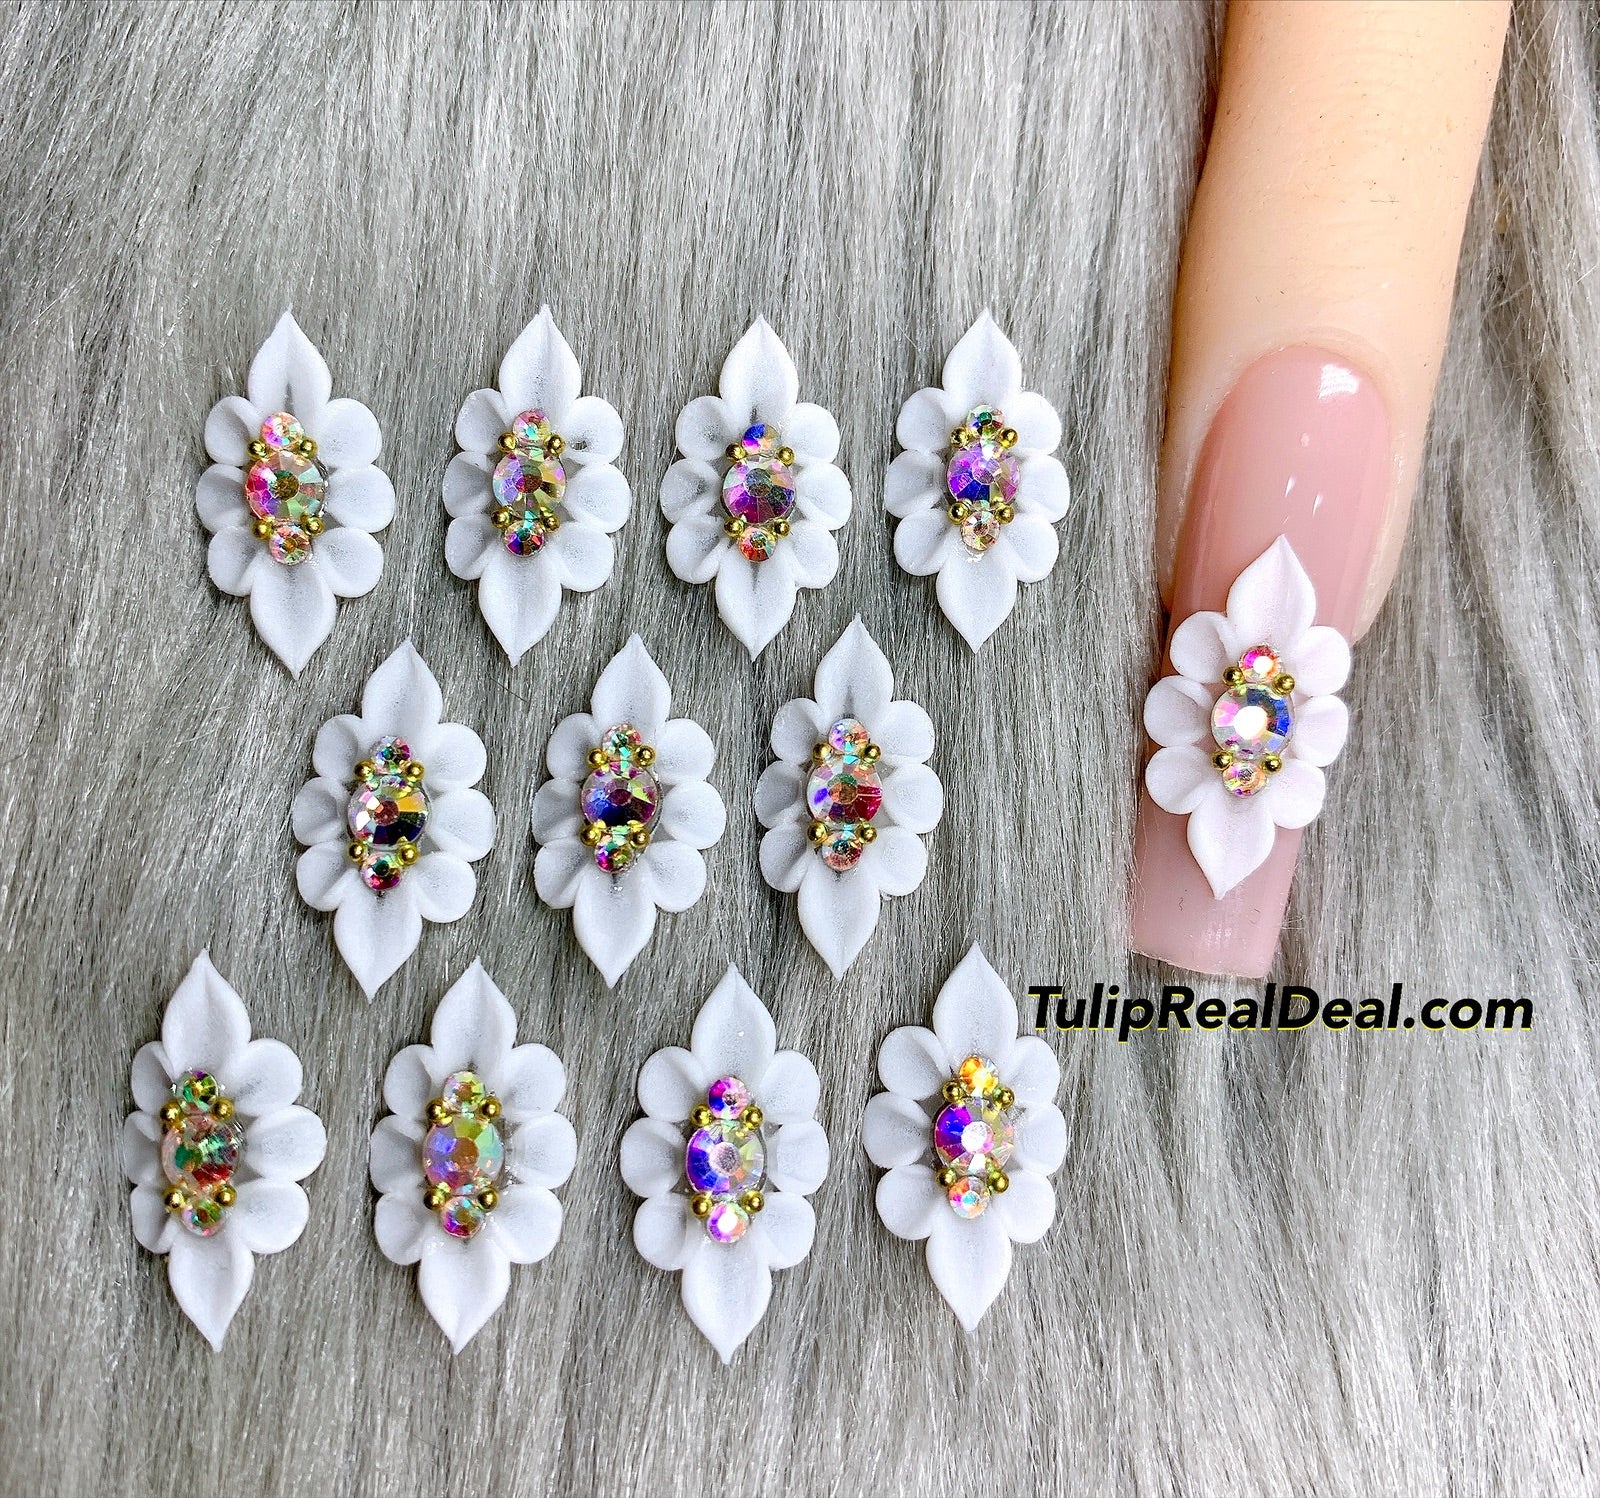 4pcs 3D Acrylic Nail Flowers